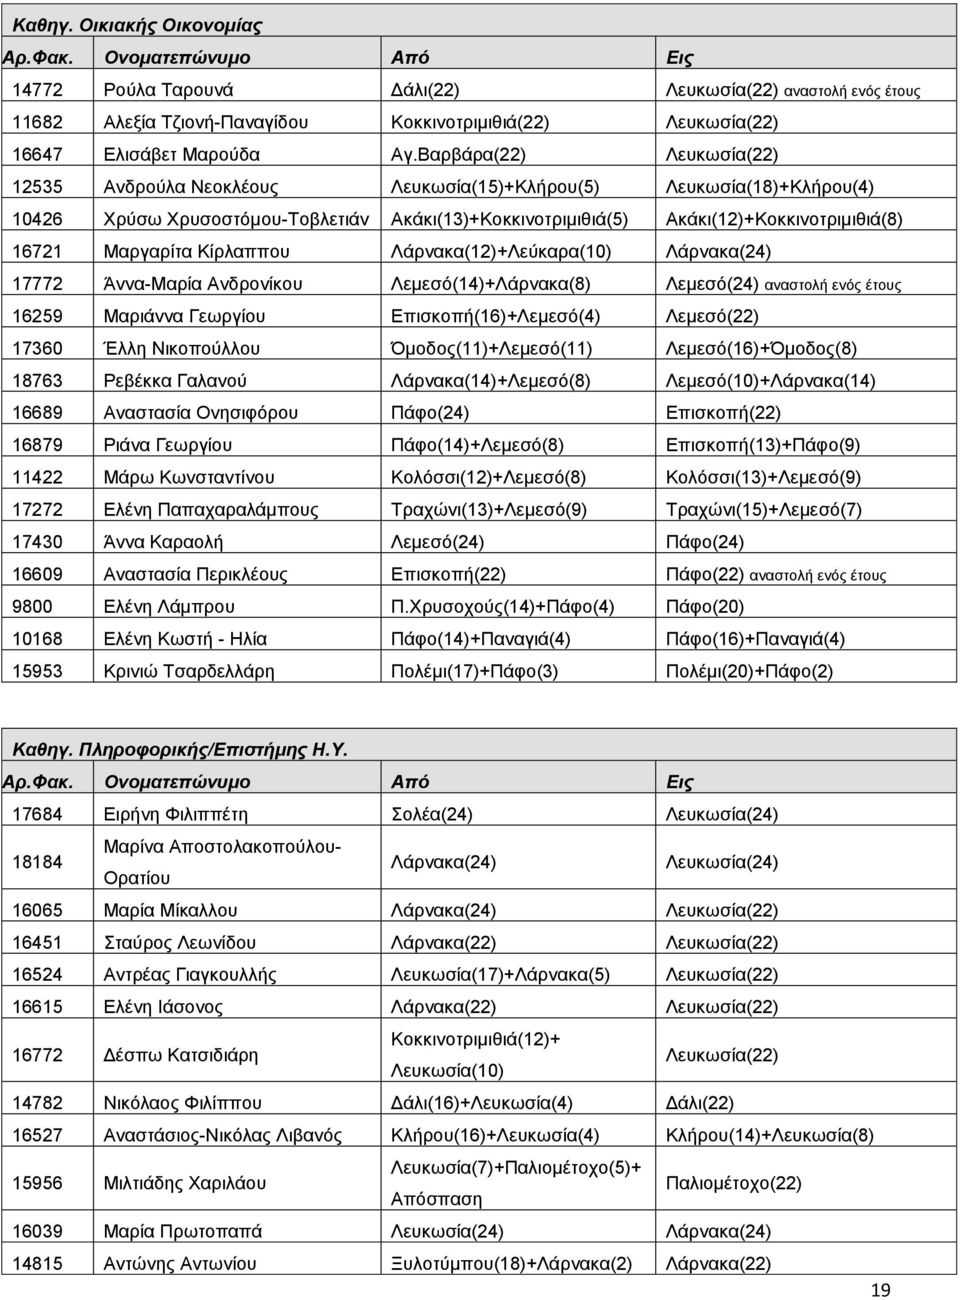 Μαργαρίτα Κίρλαππου Λάρνακα(12)+Λεύκαρα(10) Λάρνακα(24) 17772 Άννα-Μαρία Ανδρονίκου Λεμεσό(14)+Λάρνακα(8) Λεμεσό(24) αναστολή ενός έτους 16259 Μαριάννα Γεωργίου Επισκοπή(16)+Λεμεσό(4) Λεμεσό(22)